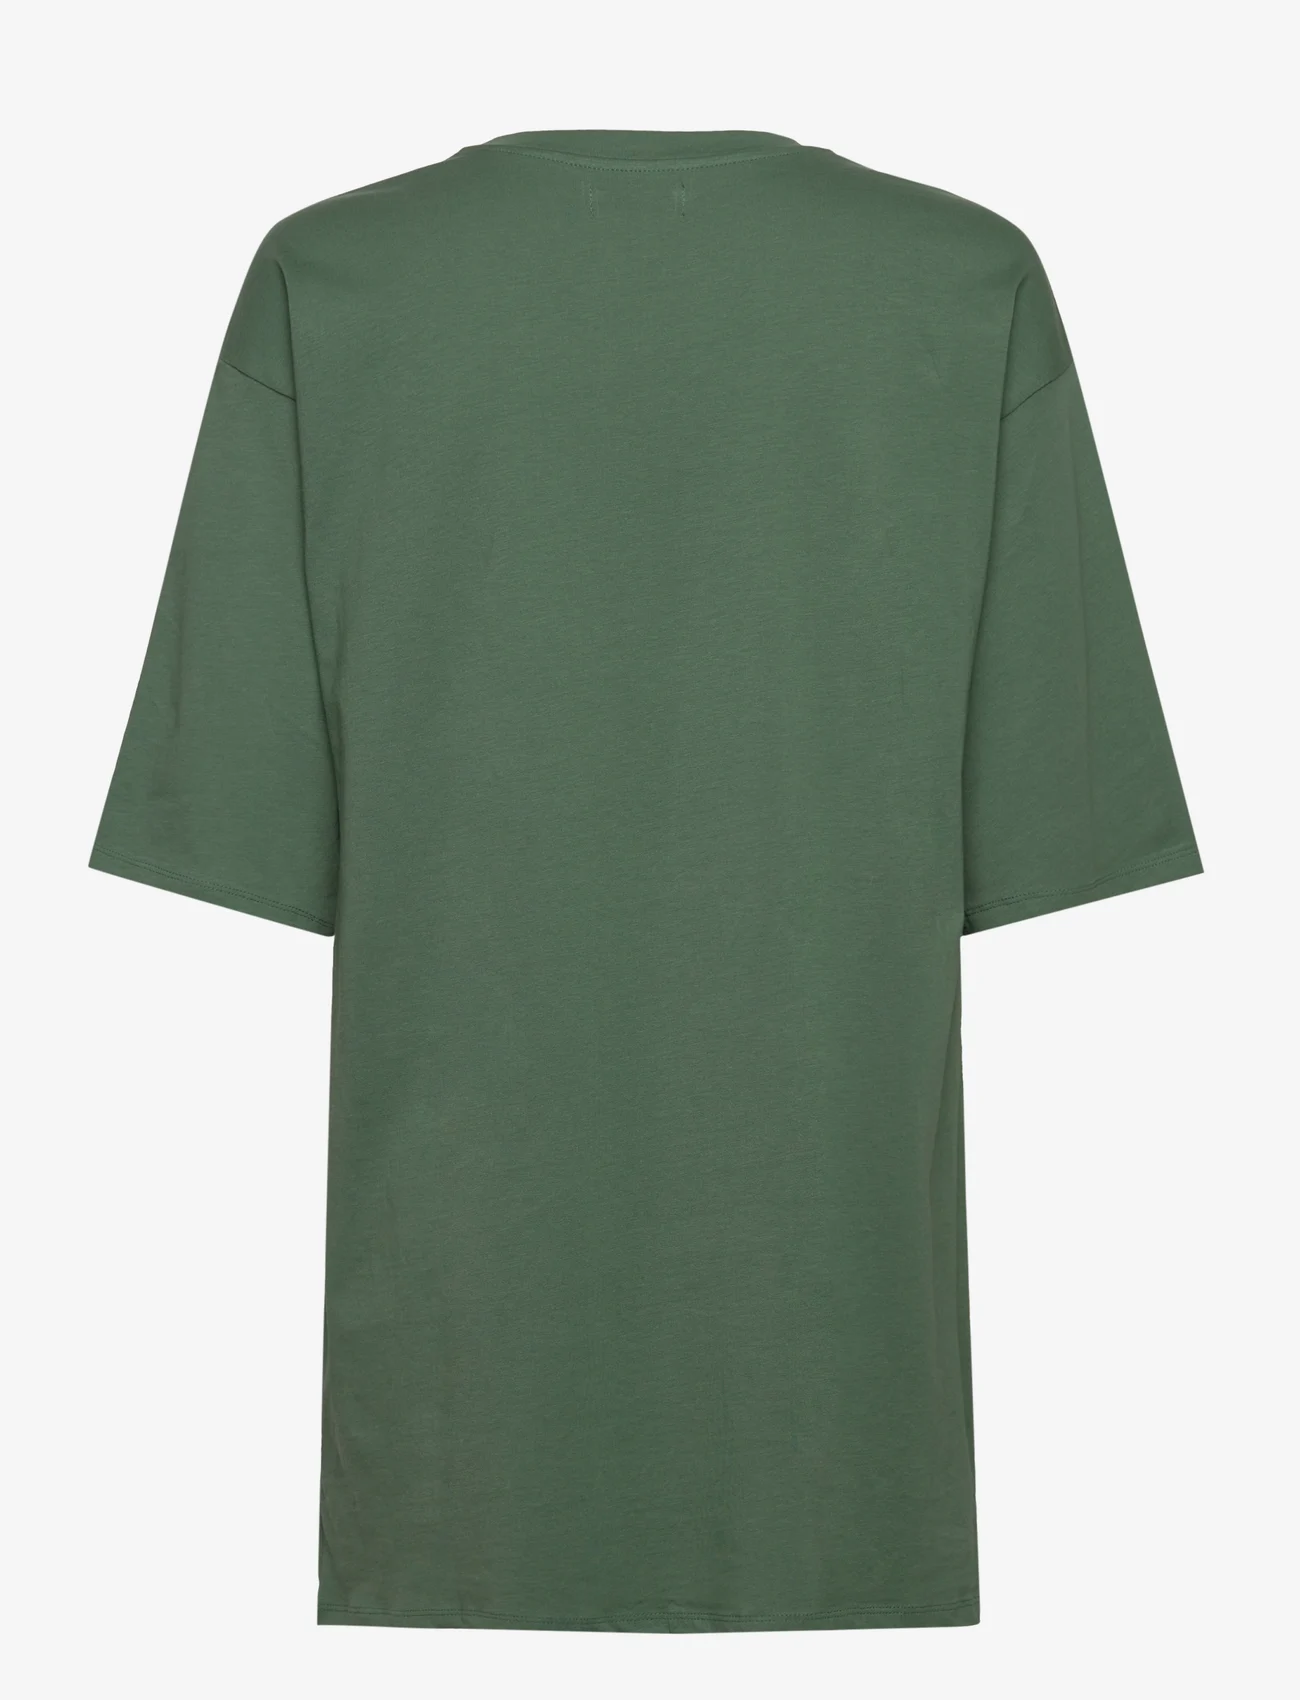 Etam - Aure night gown pyjama - plus size - green - 1